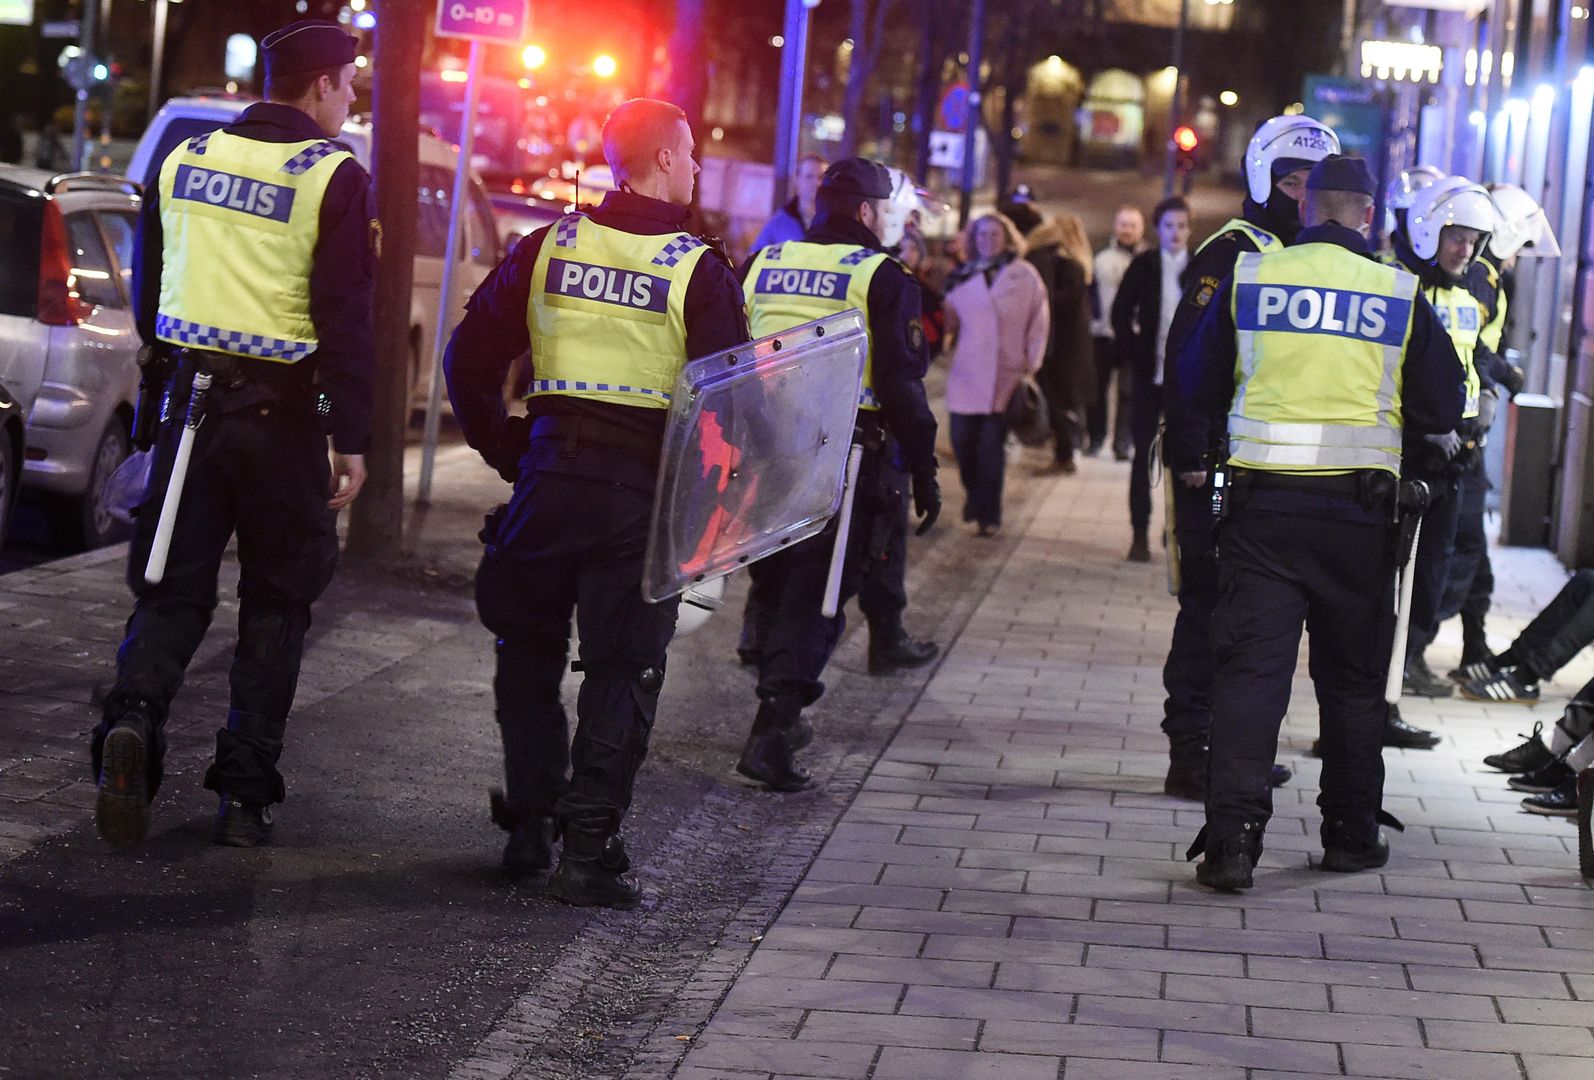 Polacy z siekierami aresztowani w Szwecji. Chcieli pobić uchodźców?